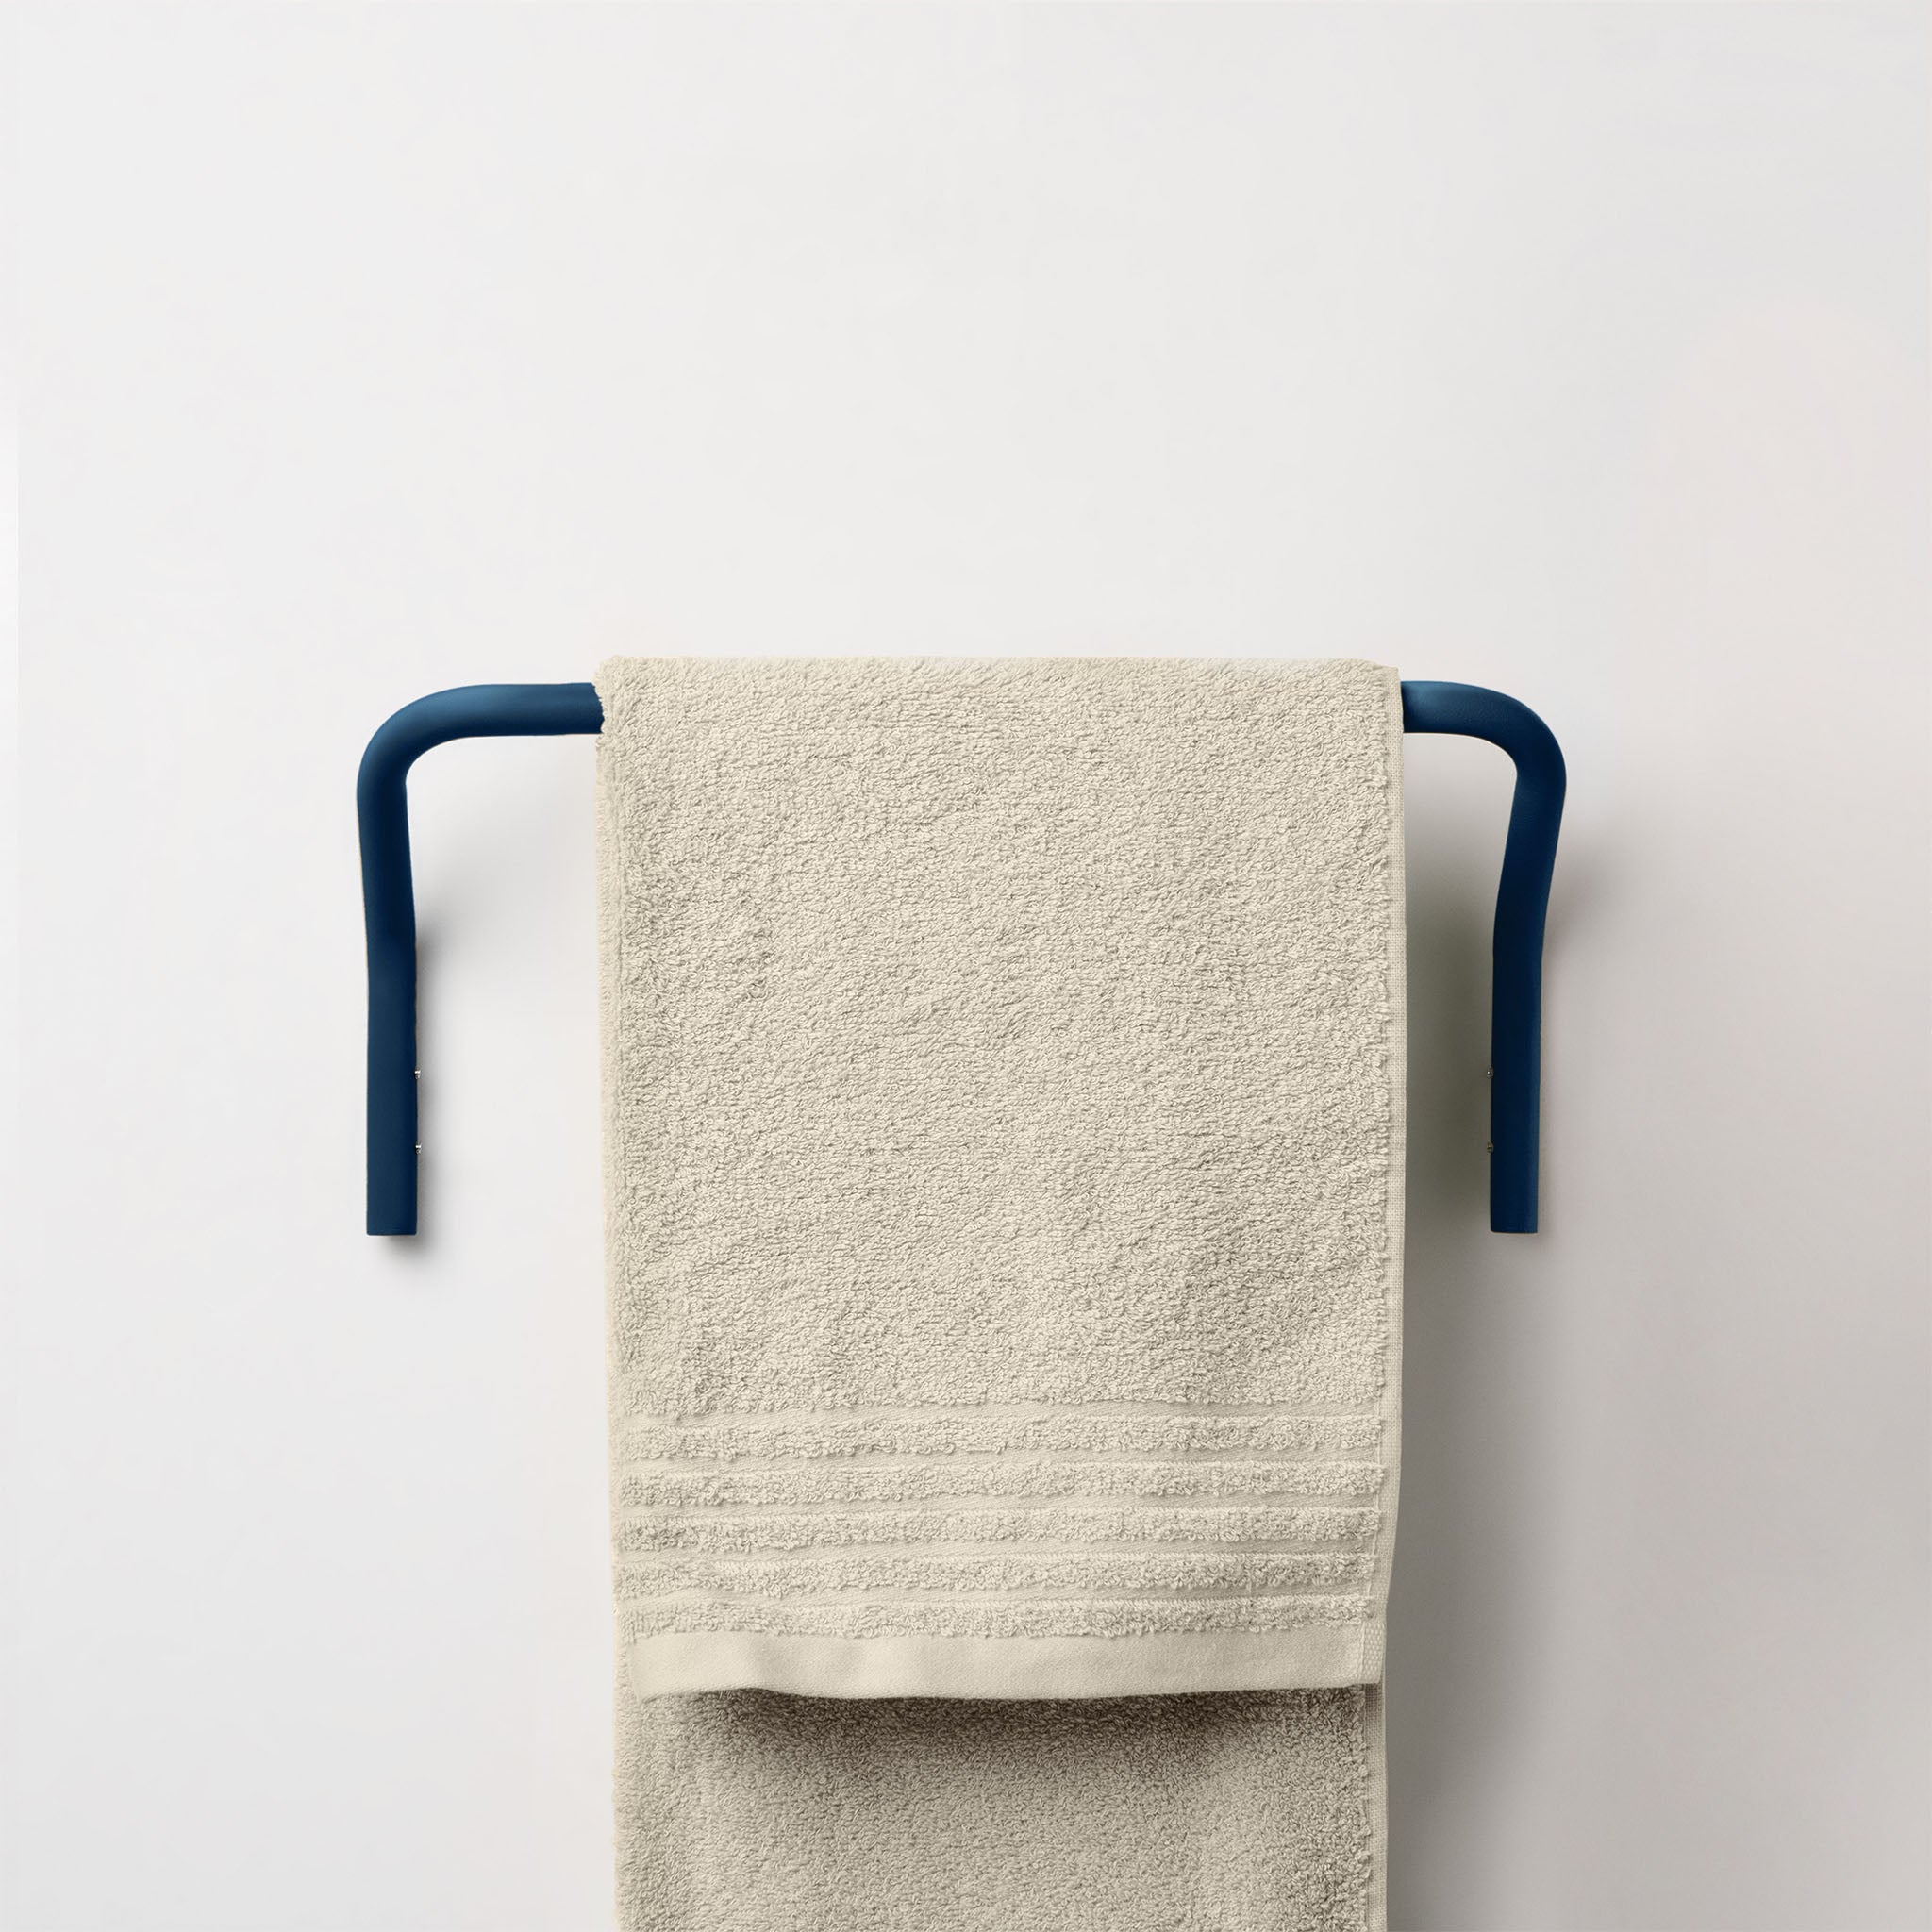 Positano wall towel holder - Midnight Blue